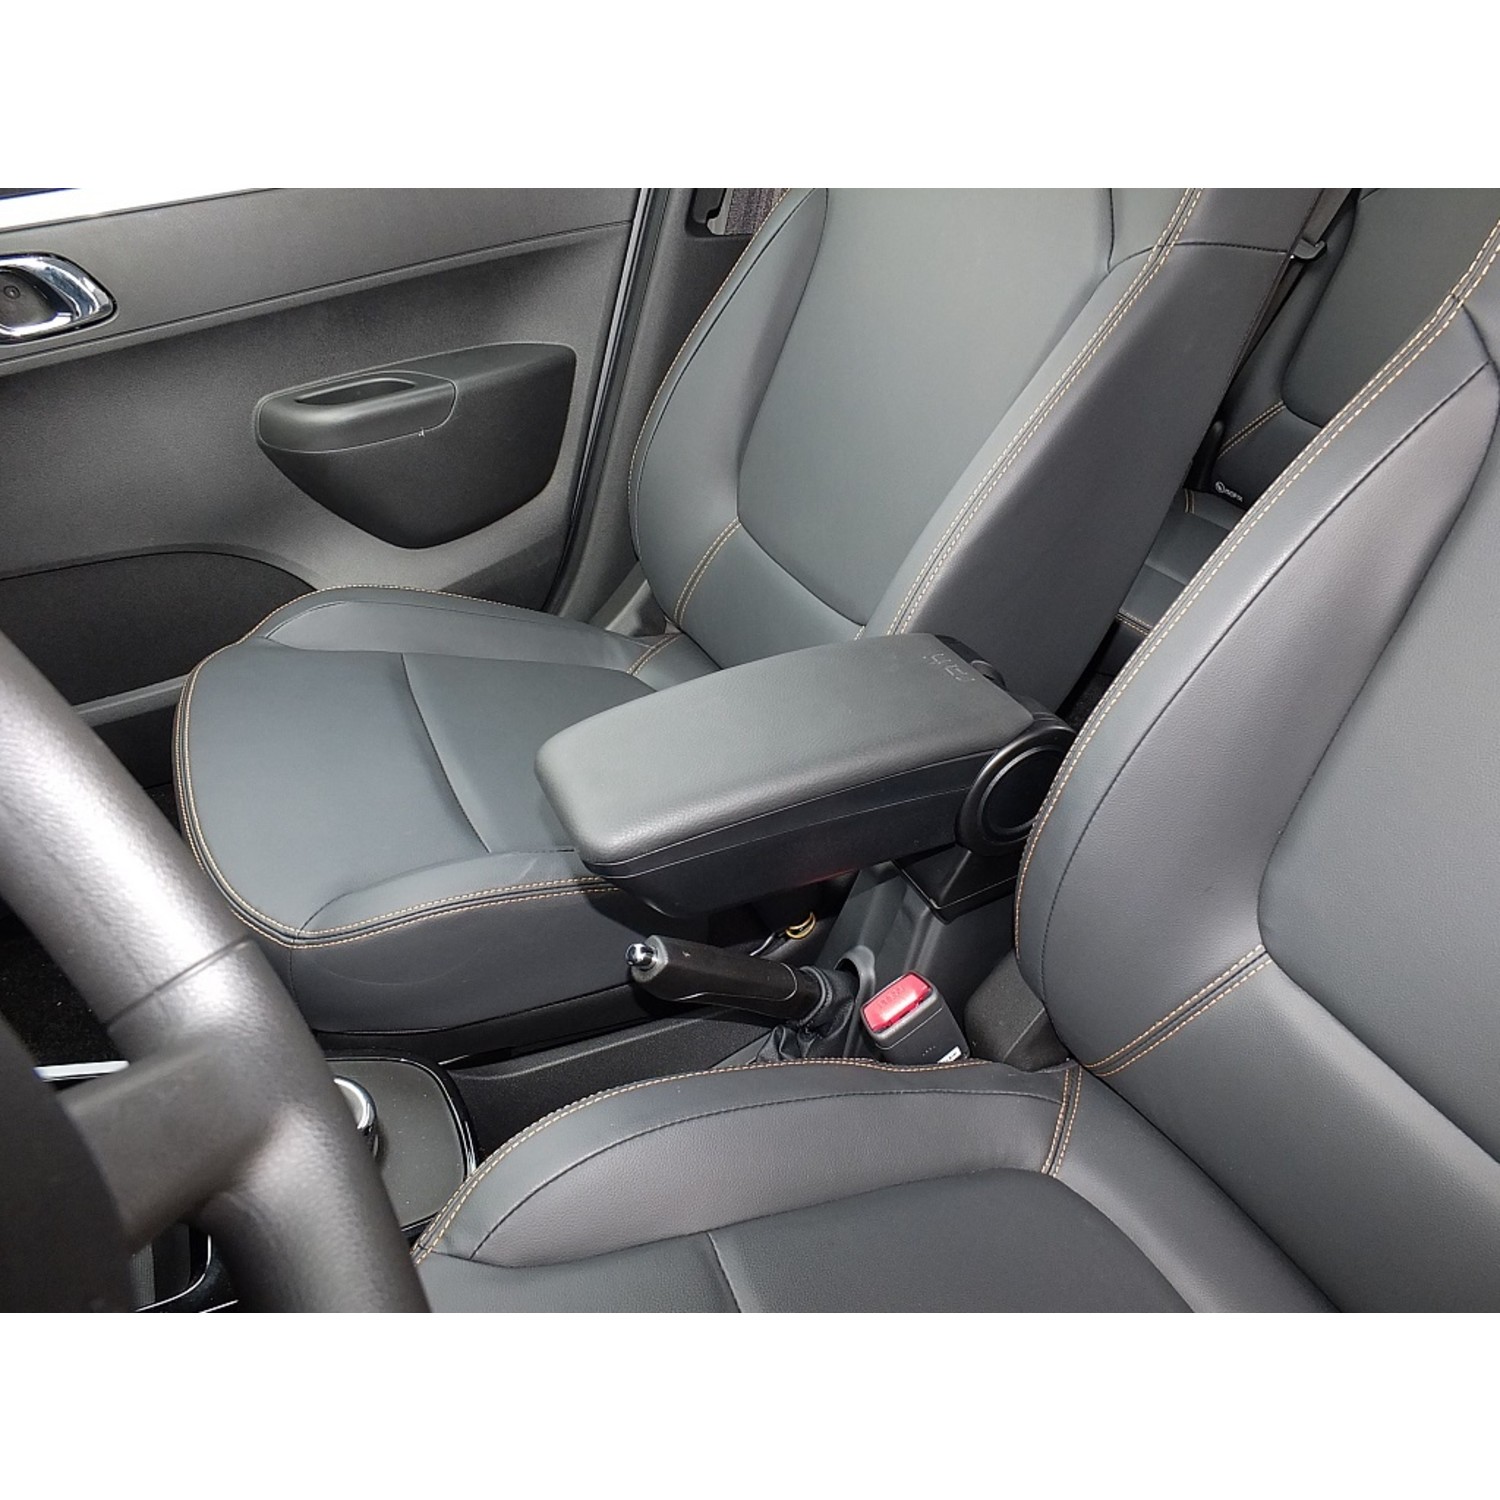 Armster Mittelarmlehne für Suzuki Jimny 2019 - Maluch Premium Autozubehör